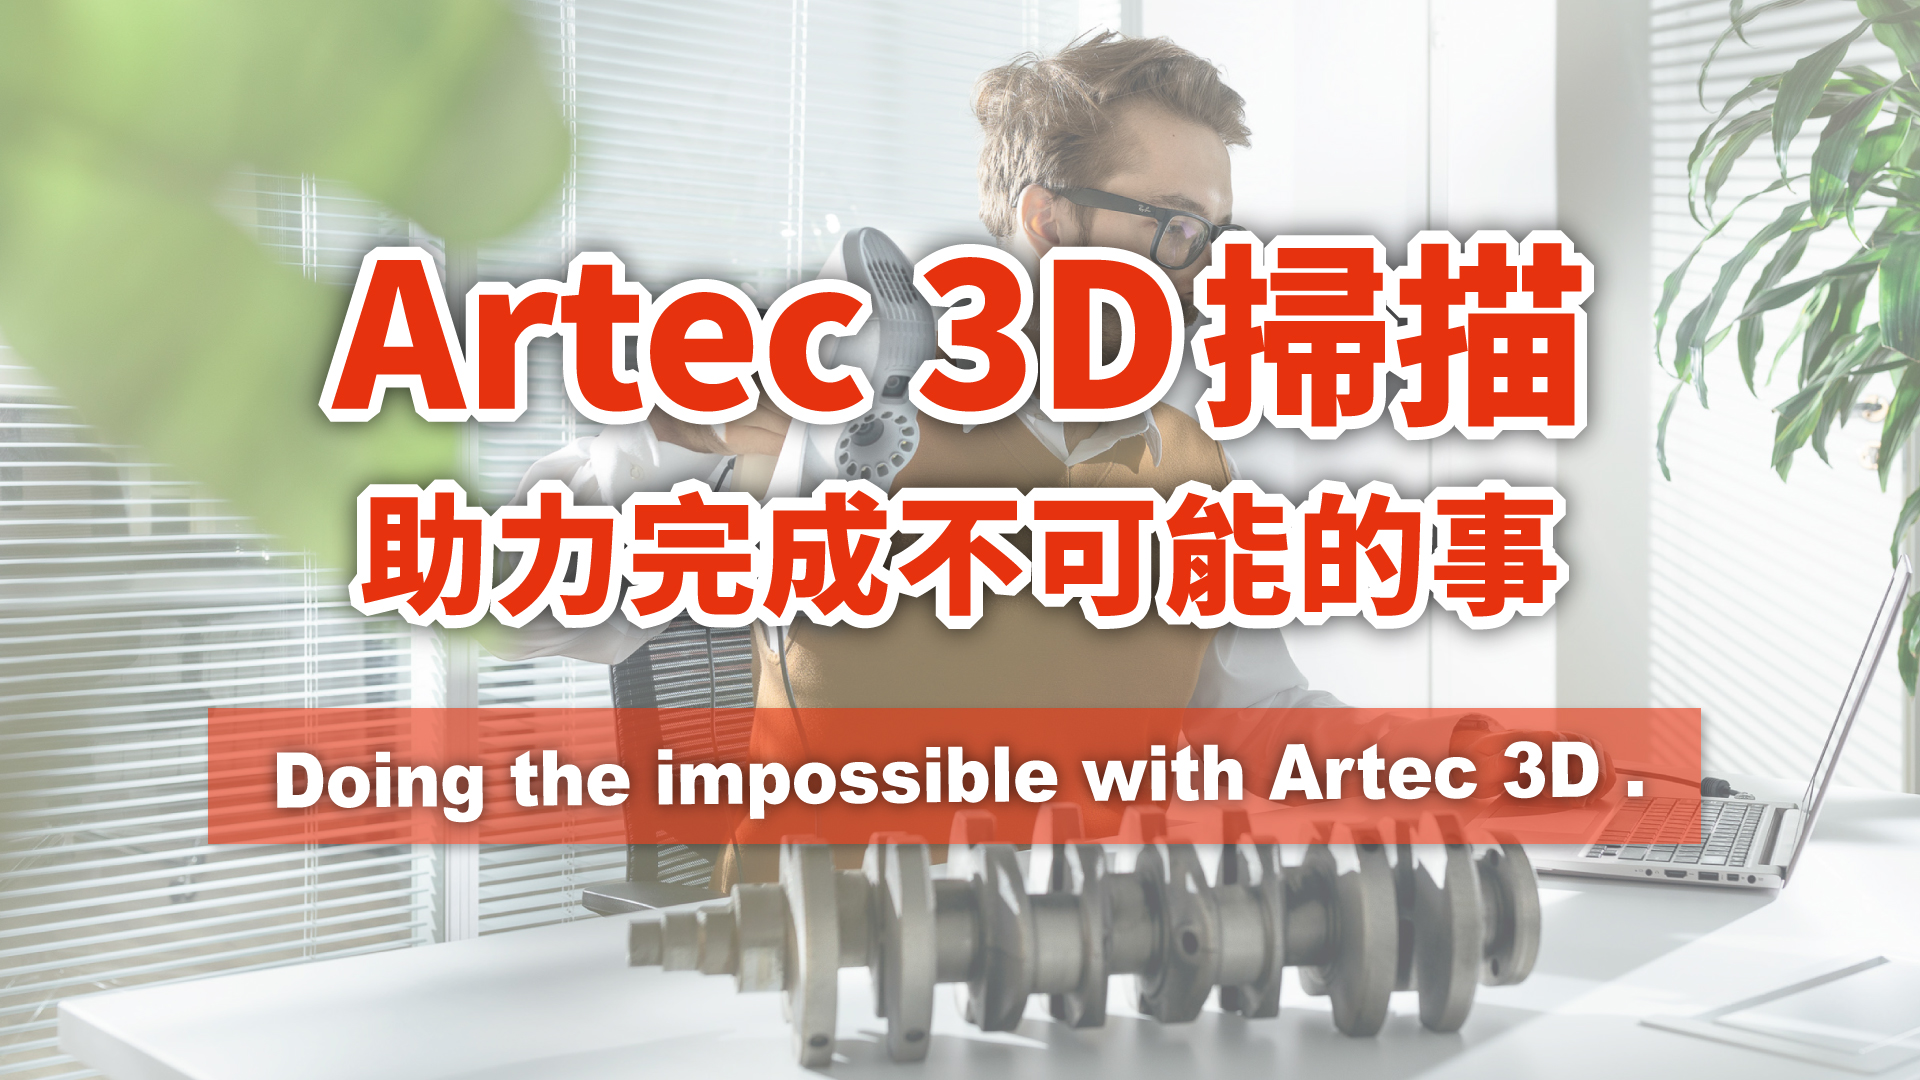 3D掃描推薦 | 用Artec 3D掃描完成不可能的事